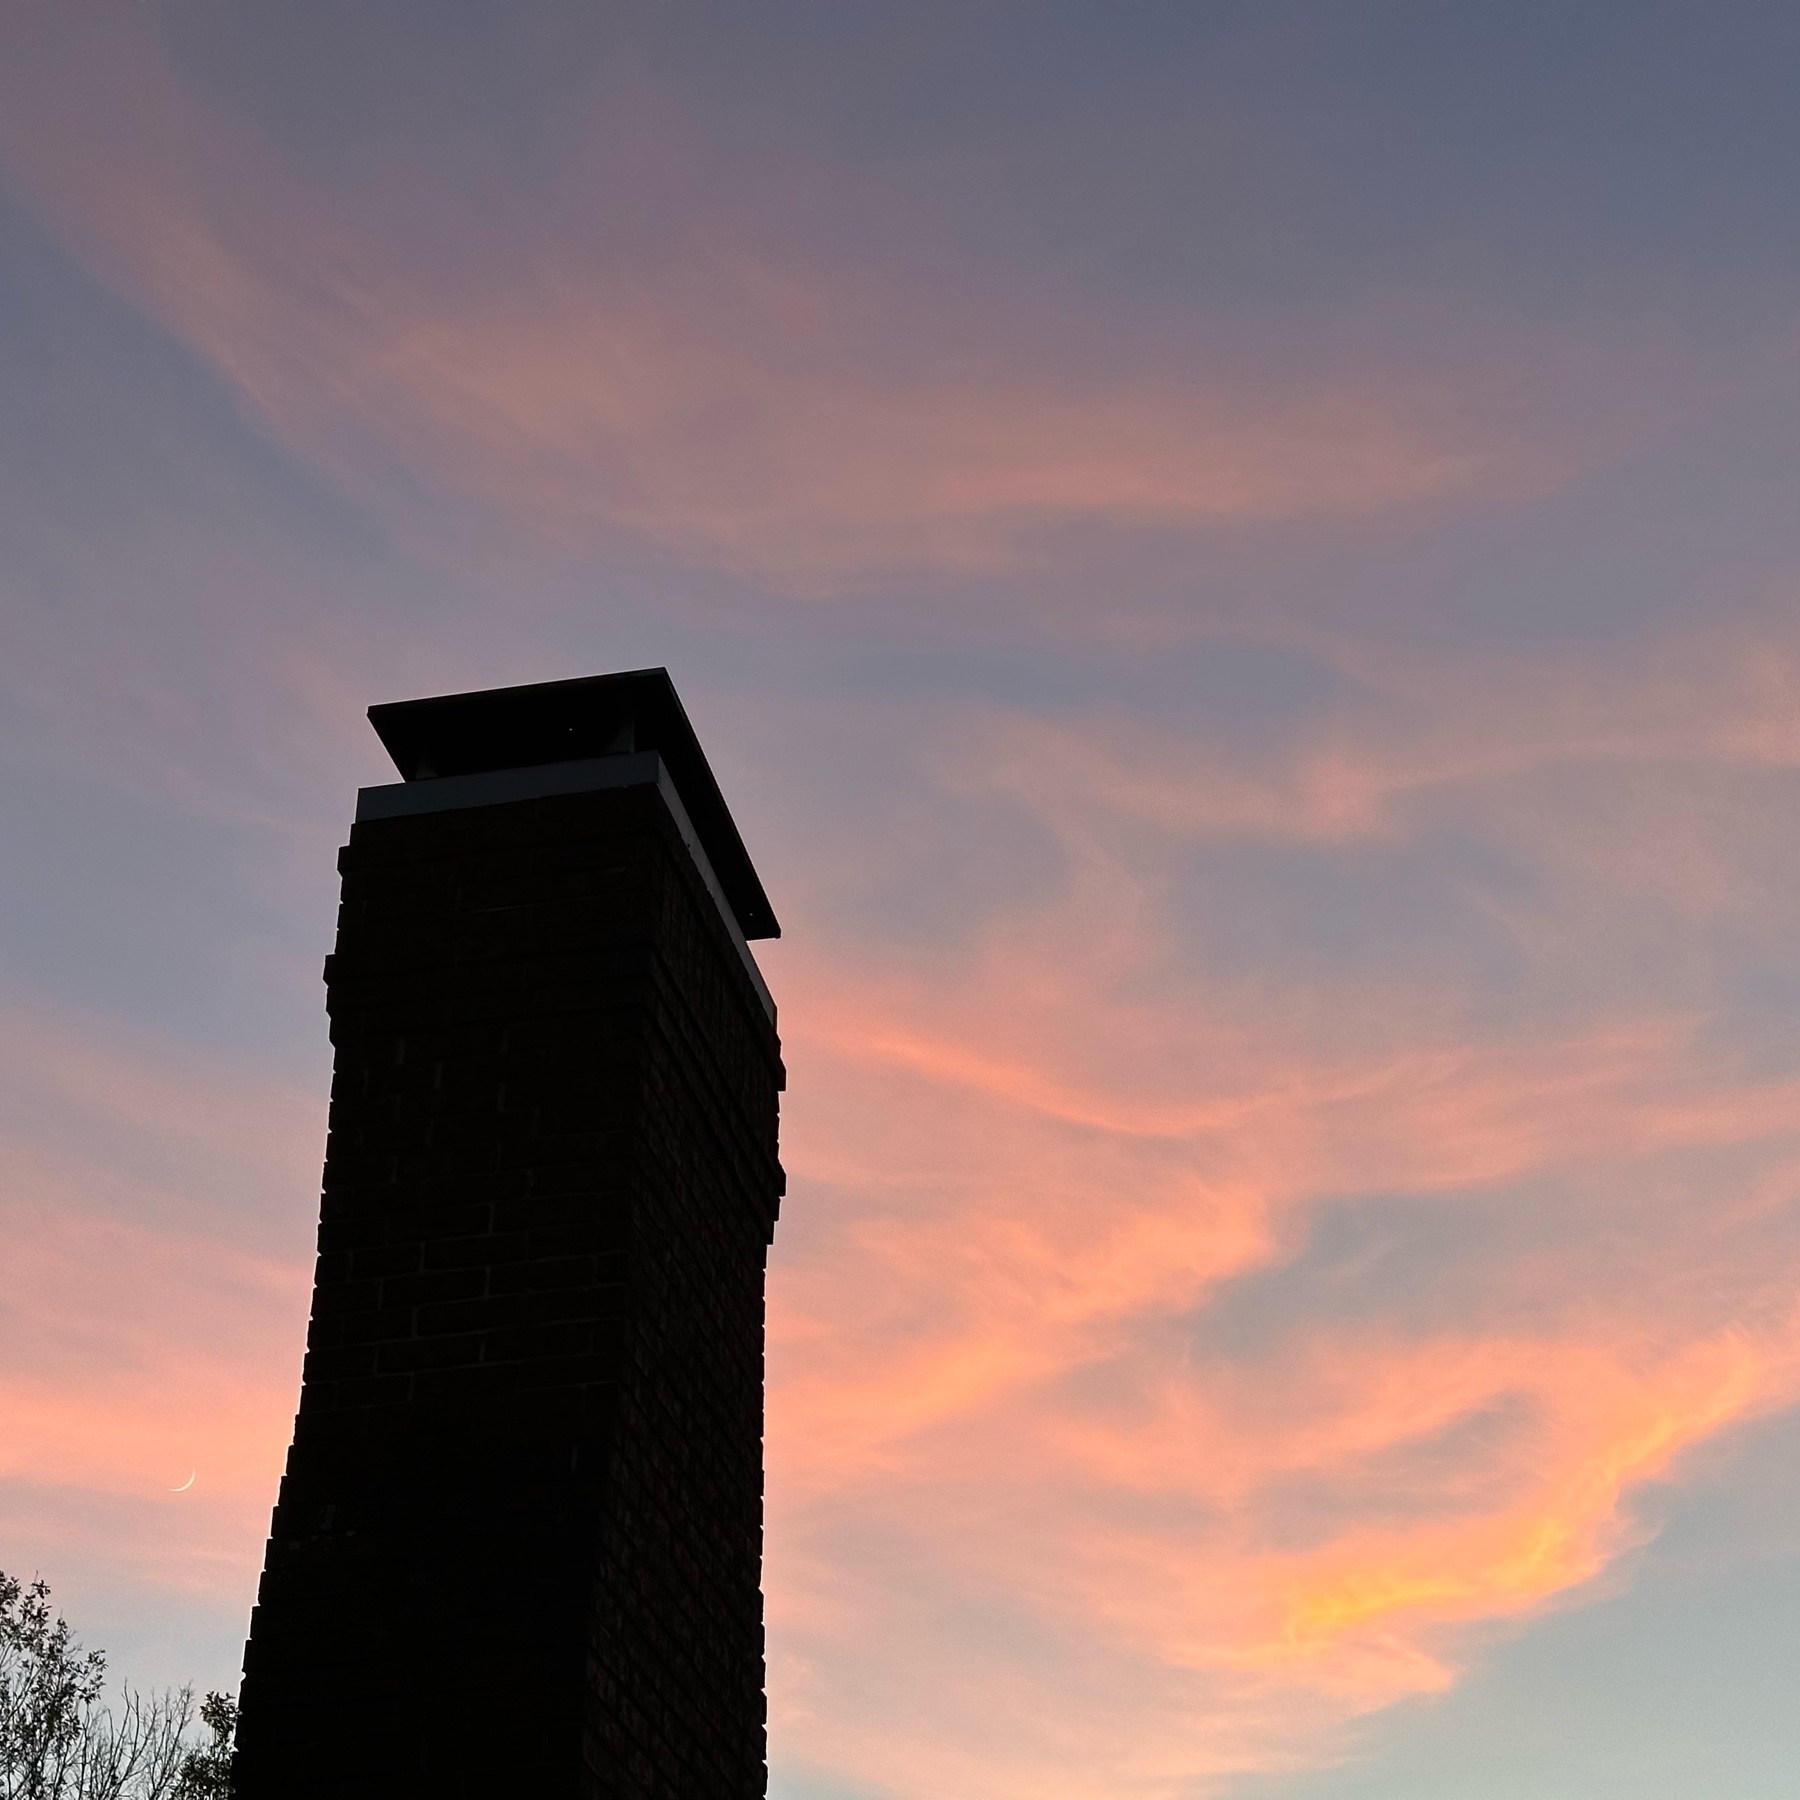 Chimney against sunset